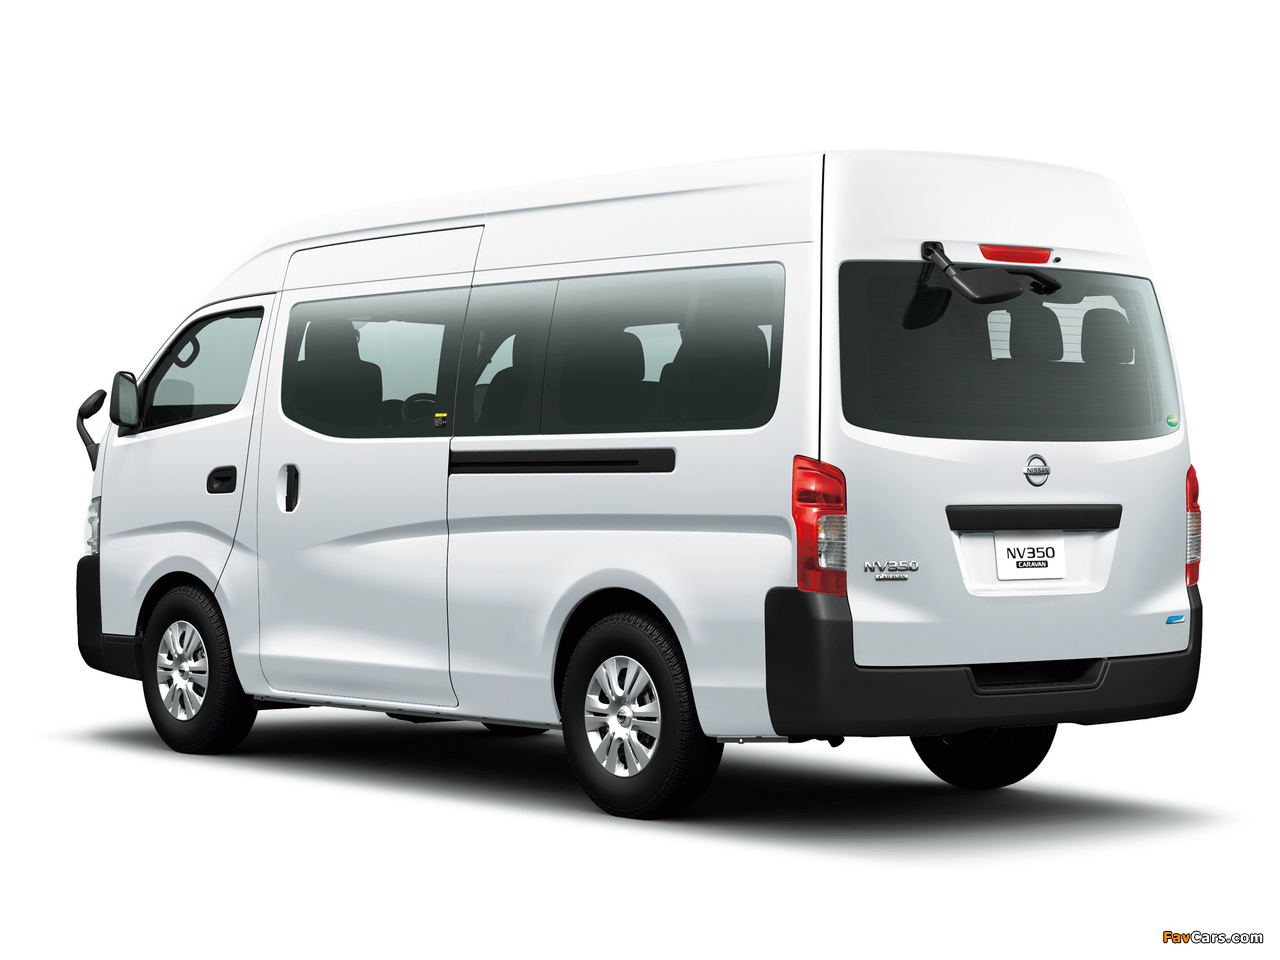 Nissan NV350 Caravan Wide Body (E26) 2012 photos (1280 x 960)